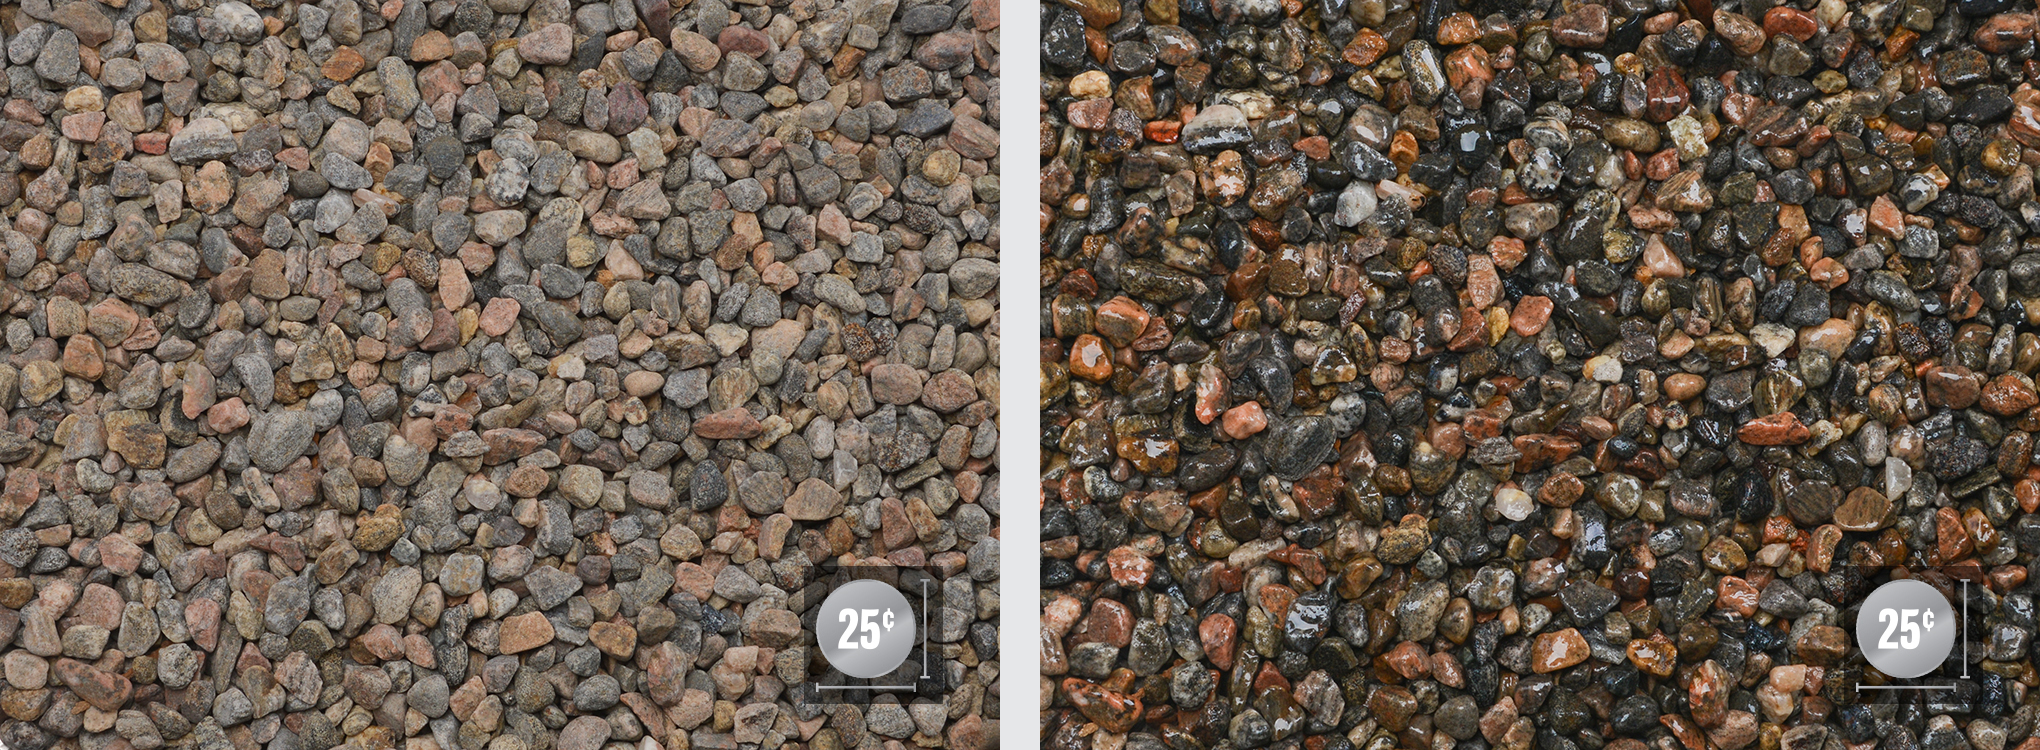 1/4" - 5/8" (6-16mm) (Left: Dry, Right: Wet)